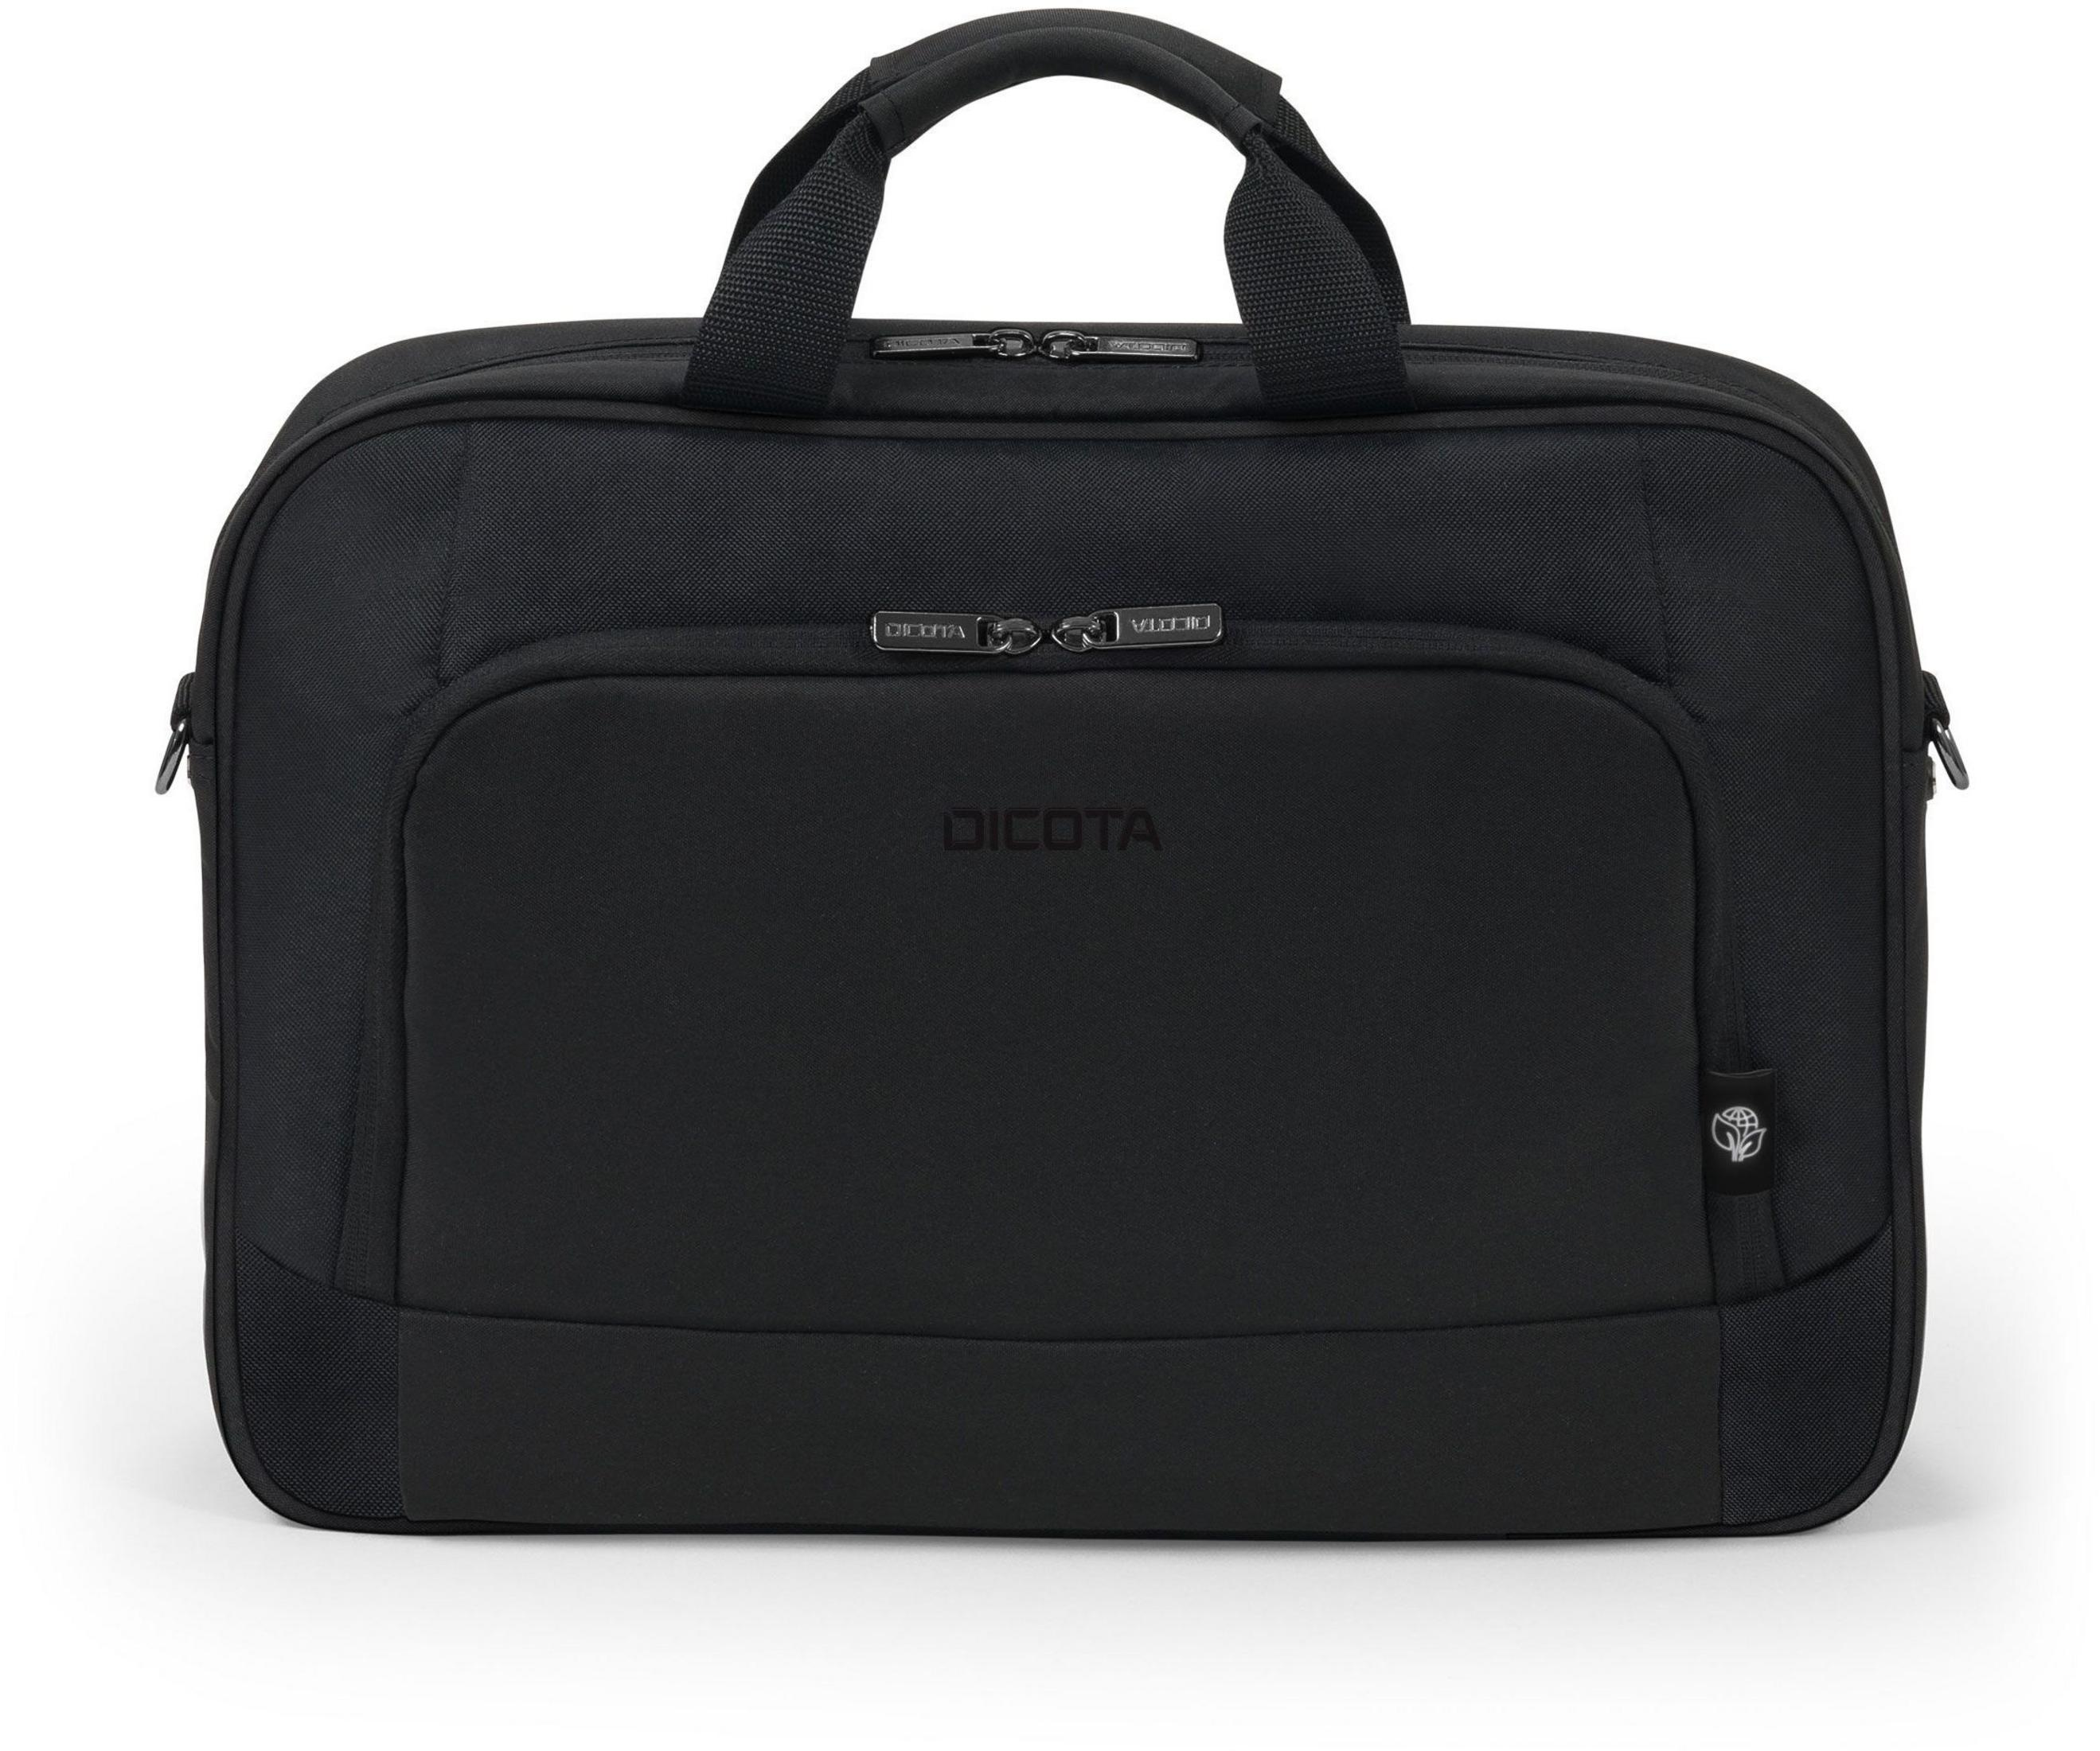 DICOTA Eco BASE Notebooktasche Aktentasche Schwarz recycled PET, Universal für